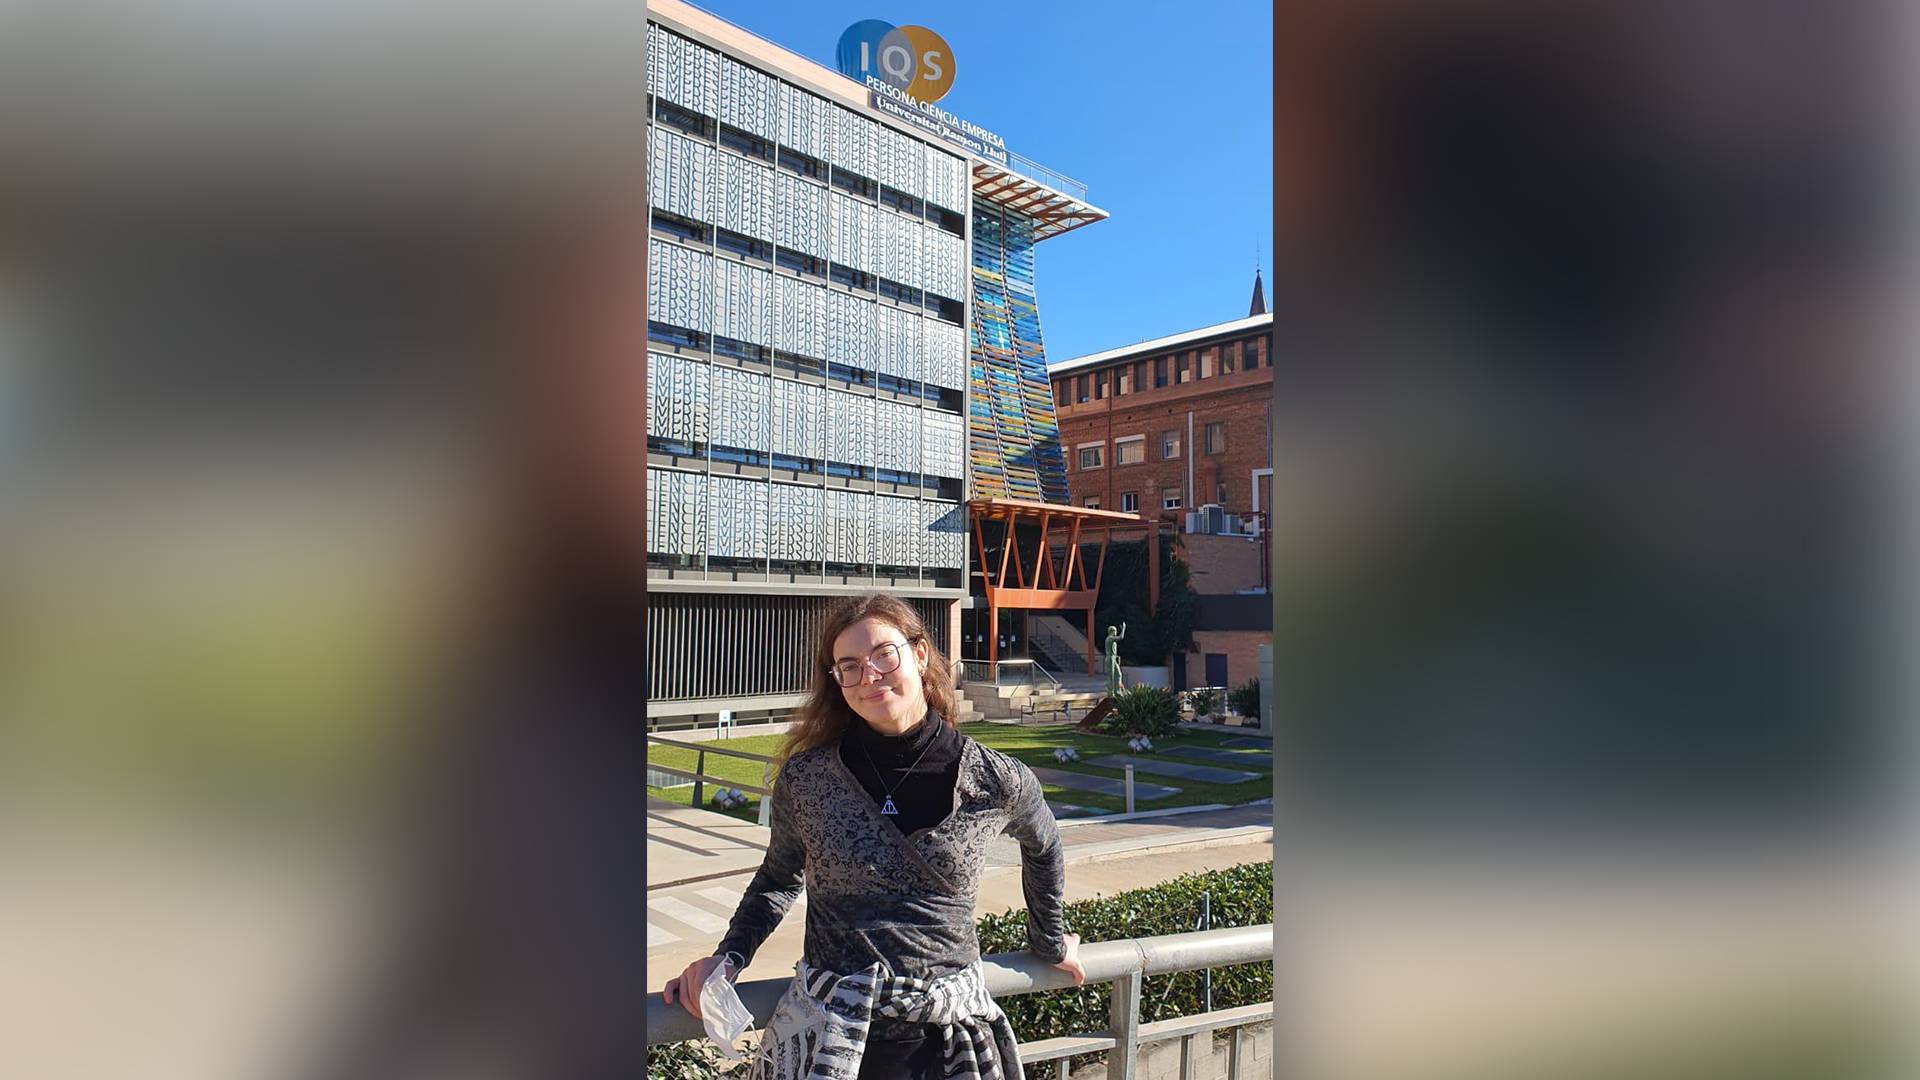 Estudiante en el extranjero: Joanna vive su sueño en España